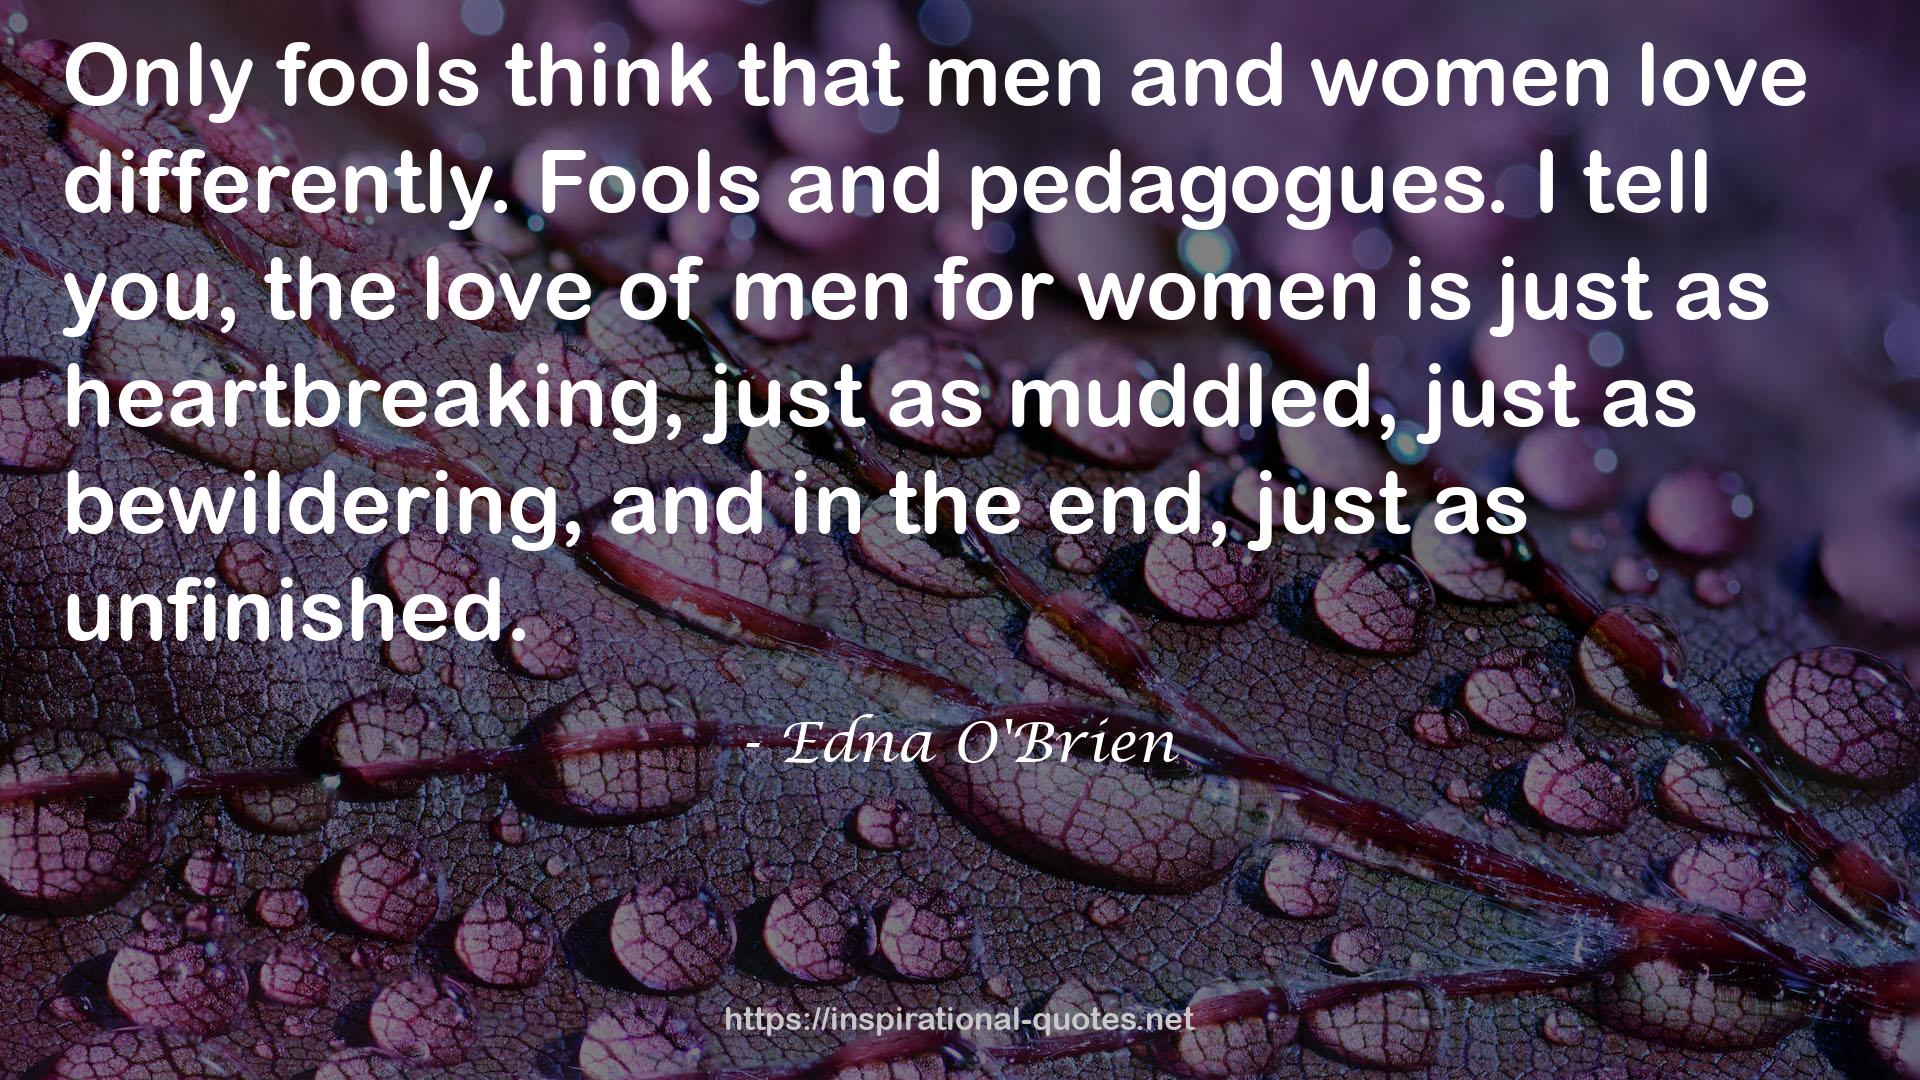 Edna O'Brien QUOTES